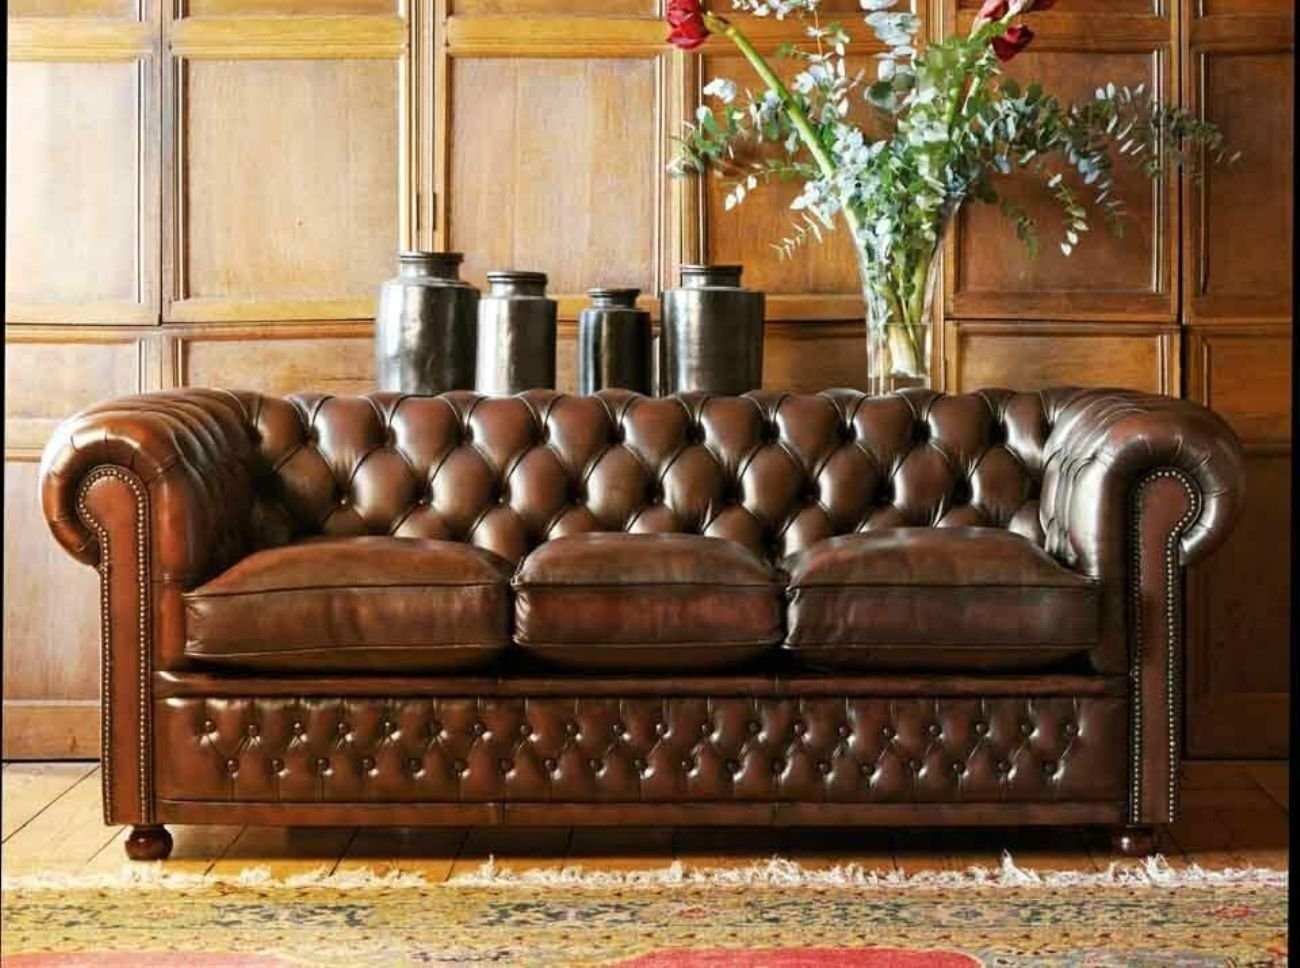 JVmoebel 3-Sitzer Chesterfield Design Polster Couch Leder Sofa Garnitur Sofas #139, Made in Europe